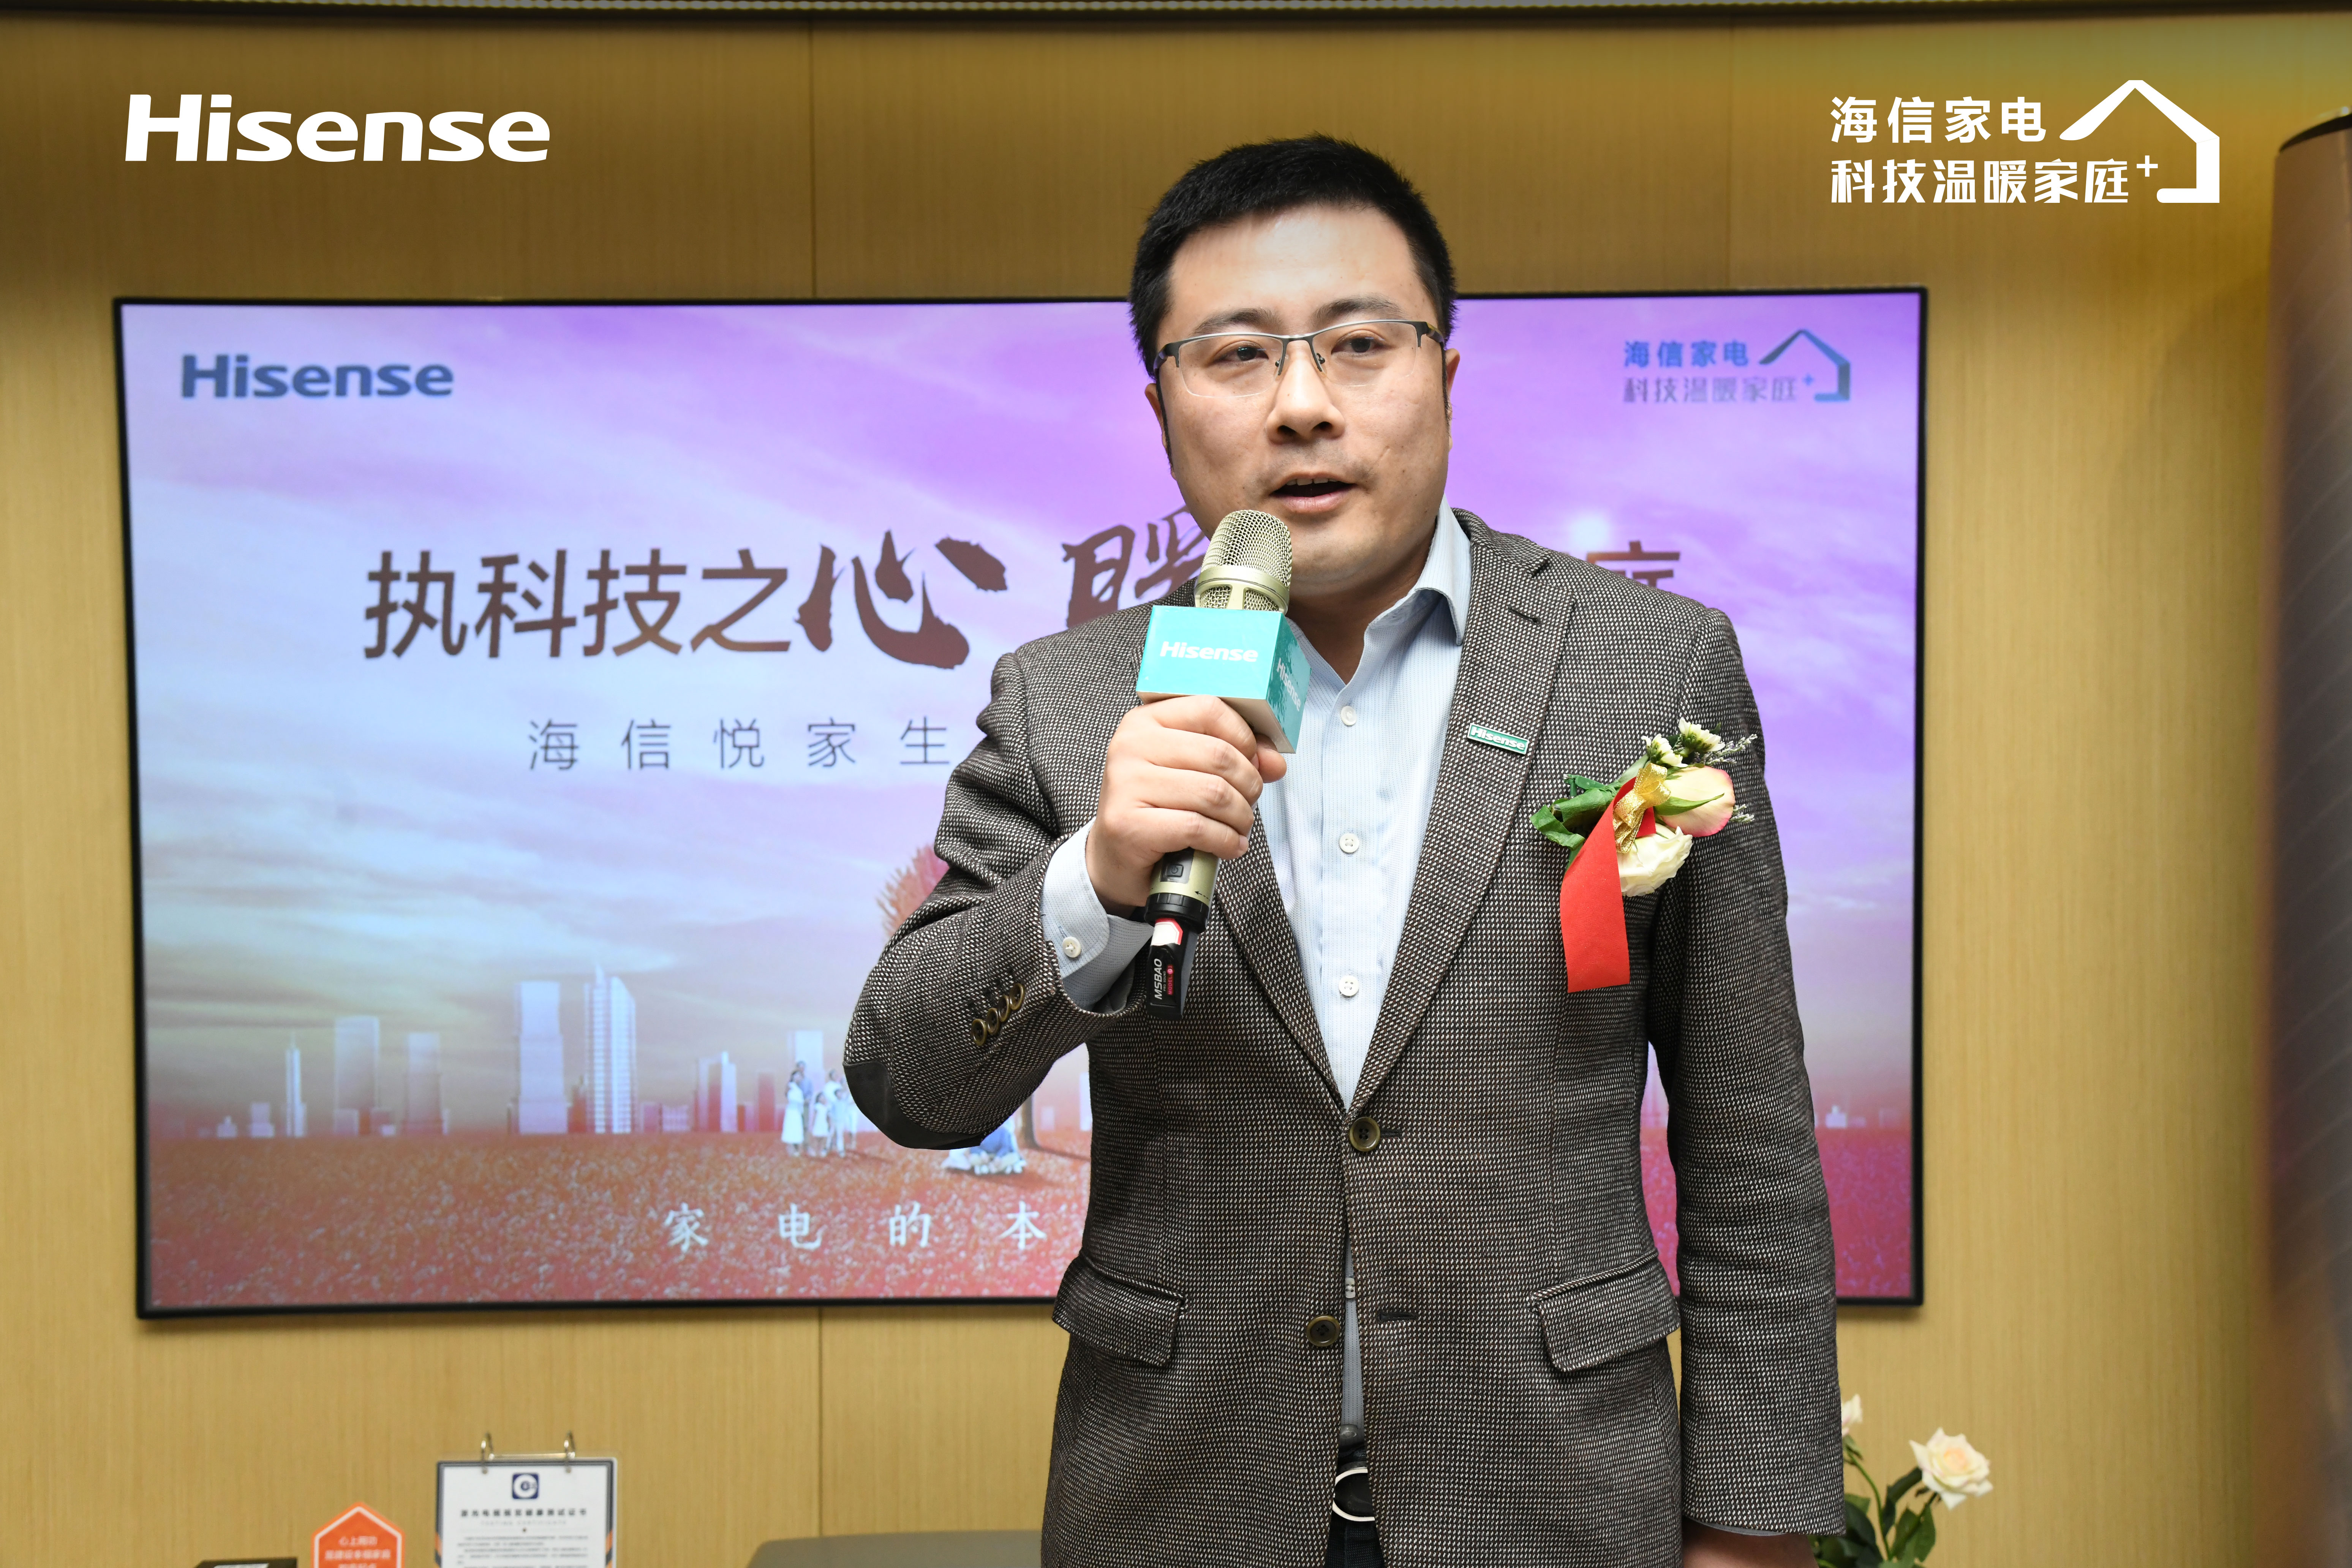 海信集团市场与营销管理部副总经理 王宏伟